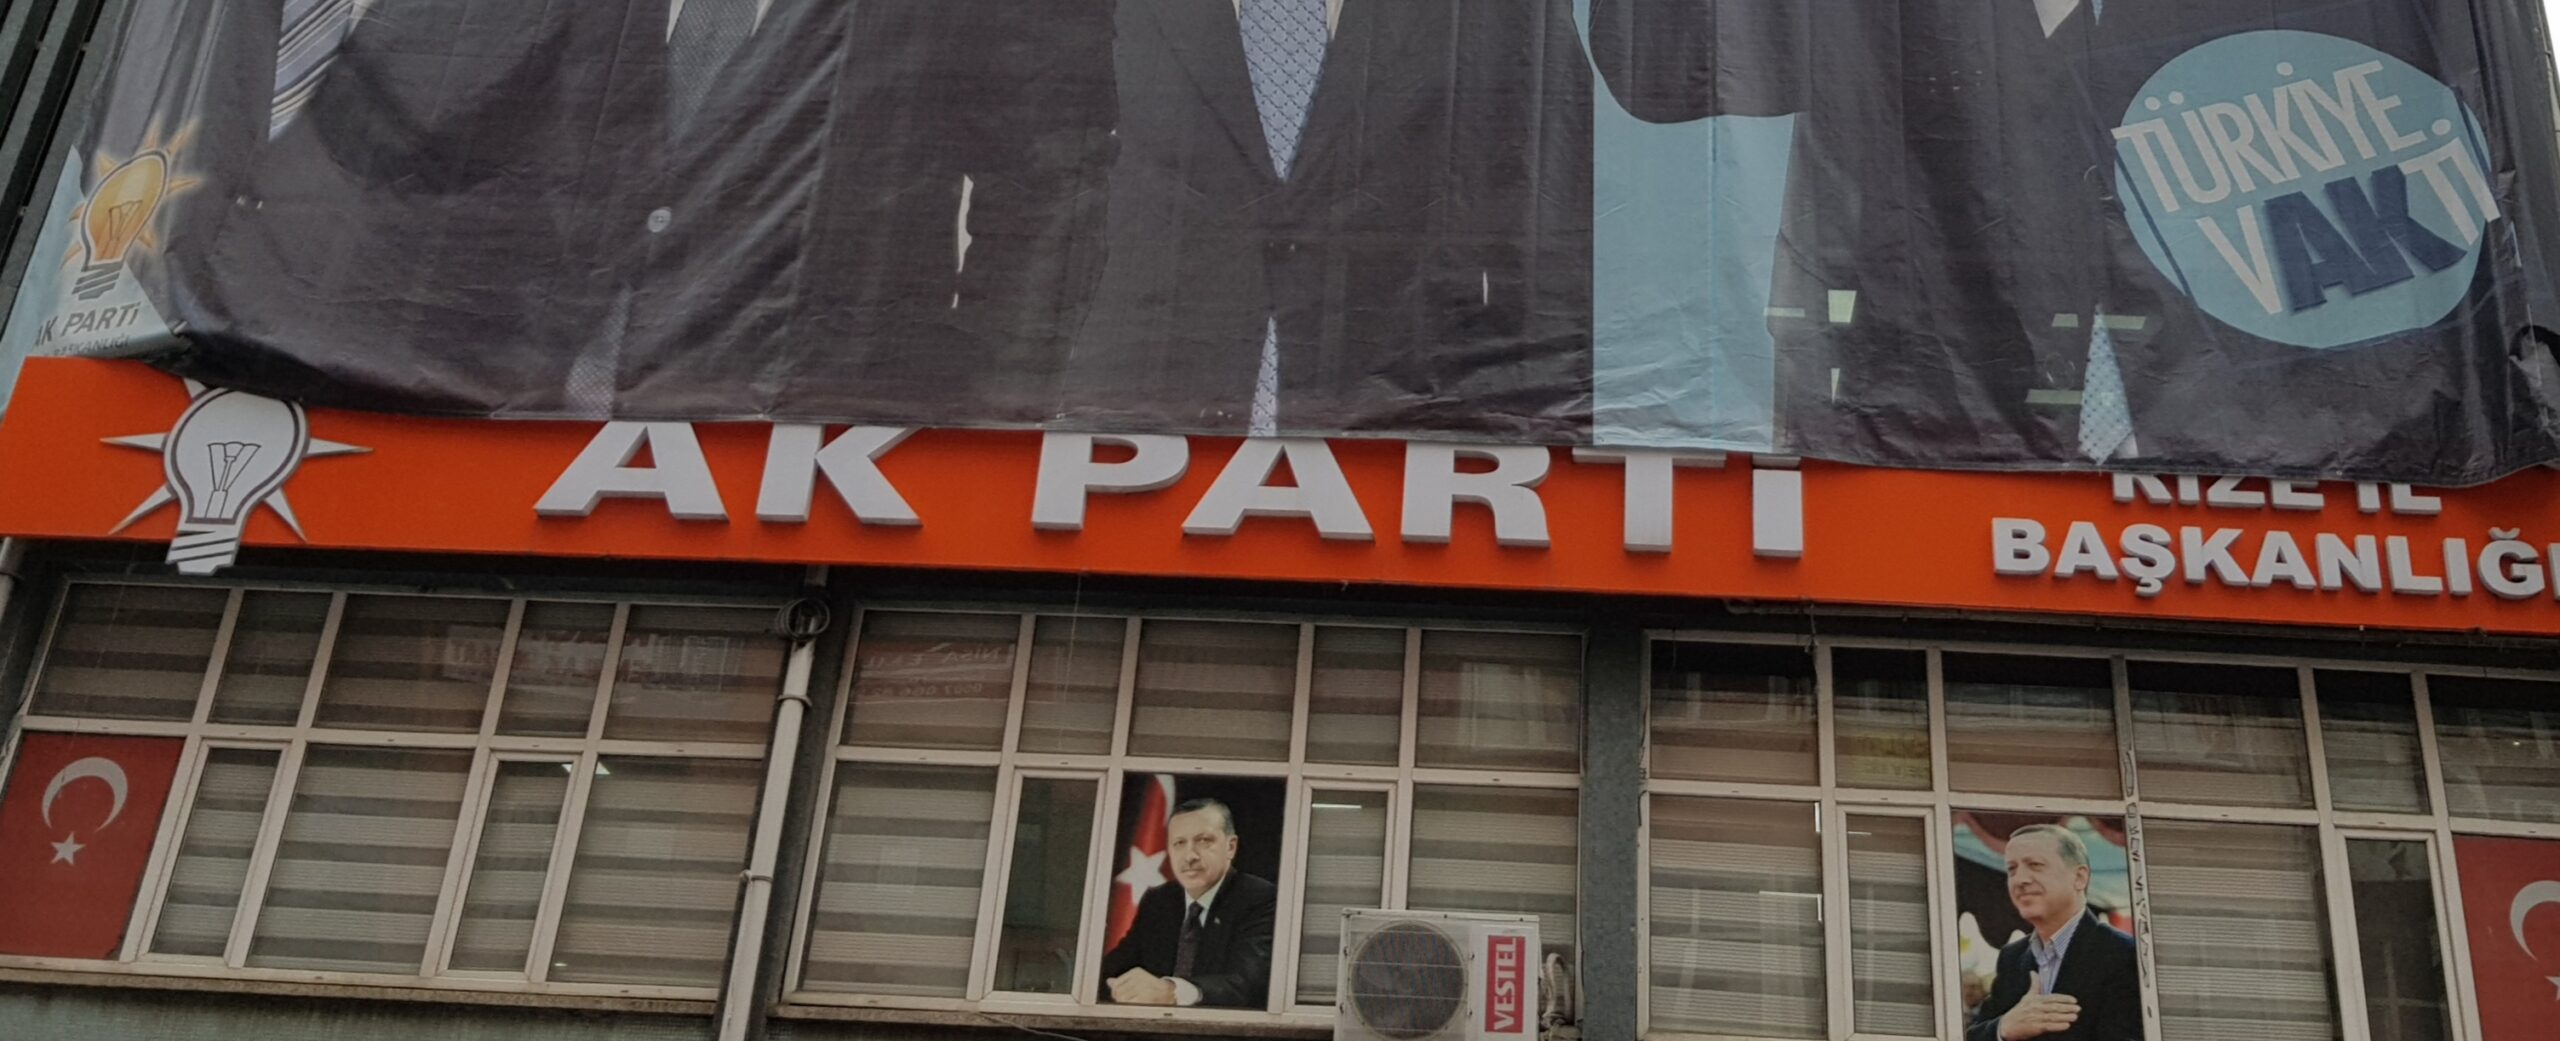 Ak parti Rize’de,2019 Yerel seçim hezimeti ve halkın Tasvip etmediği adaylar bu sonucu doğurmuştur